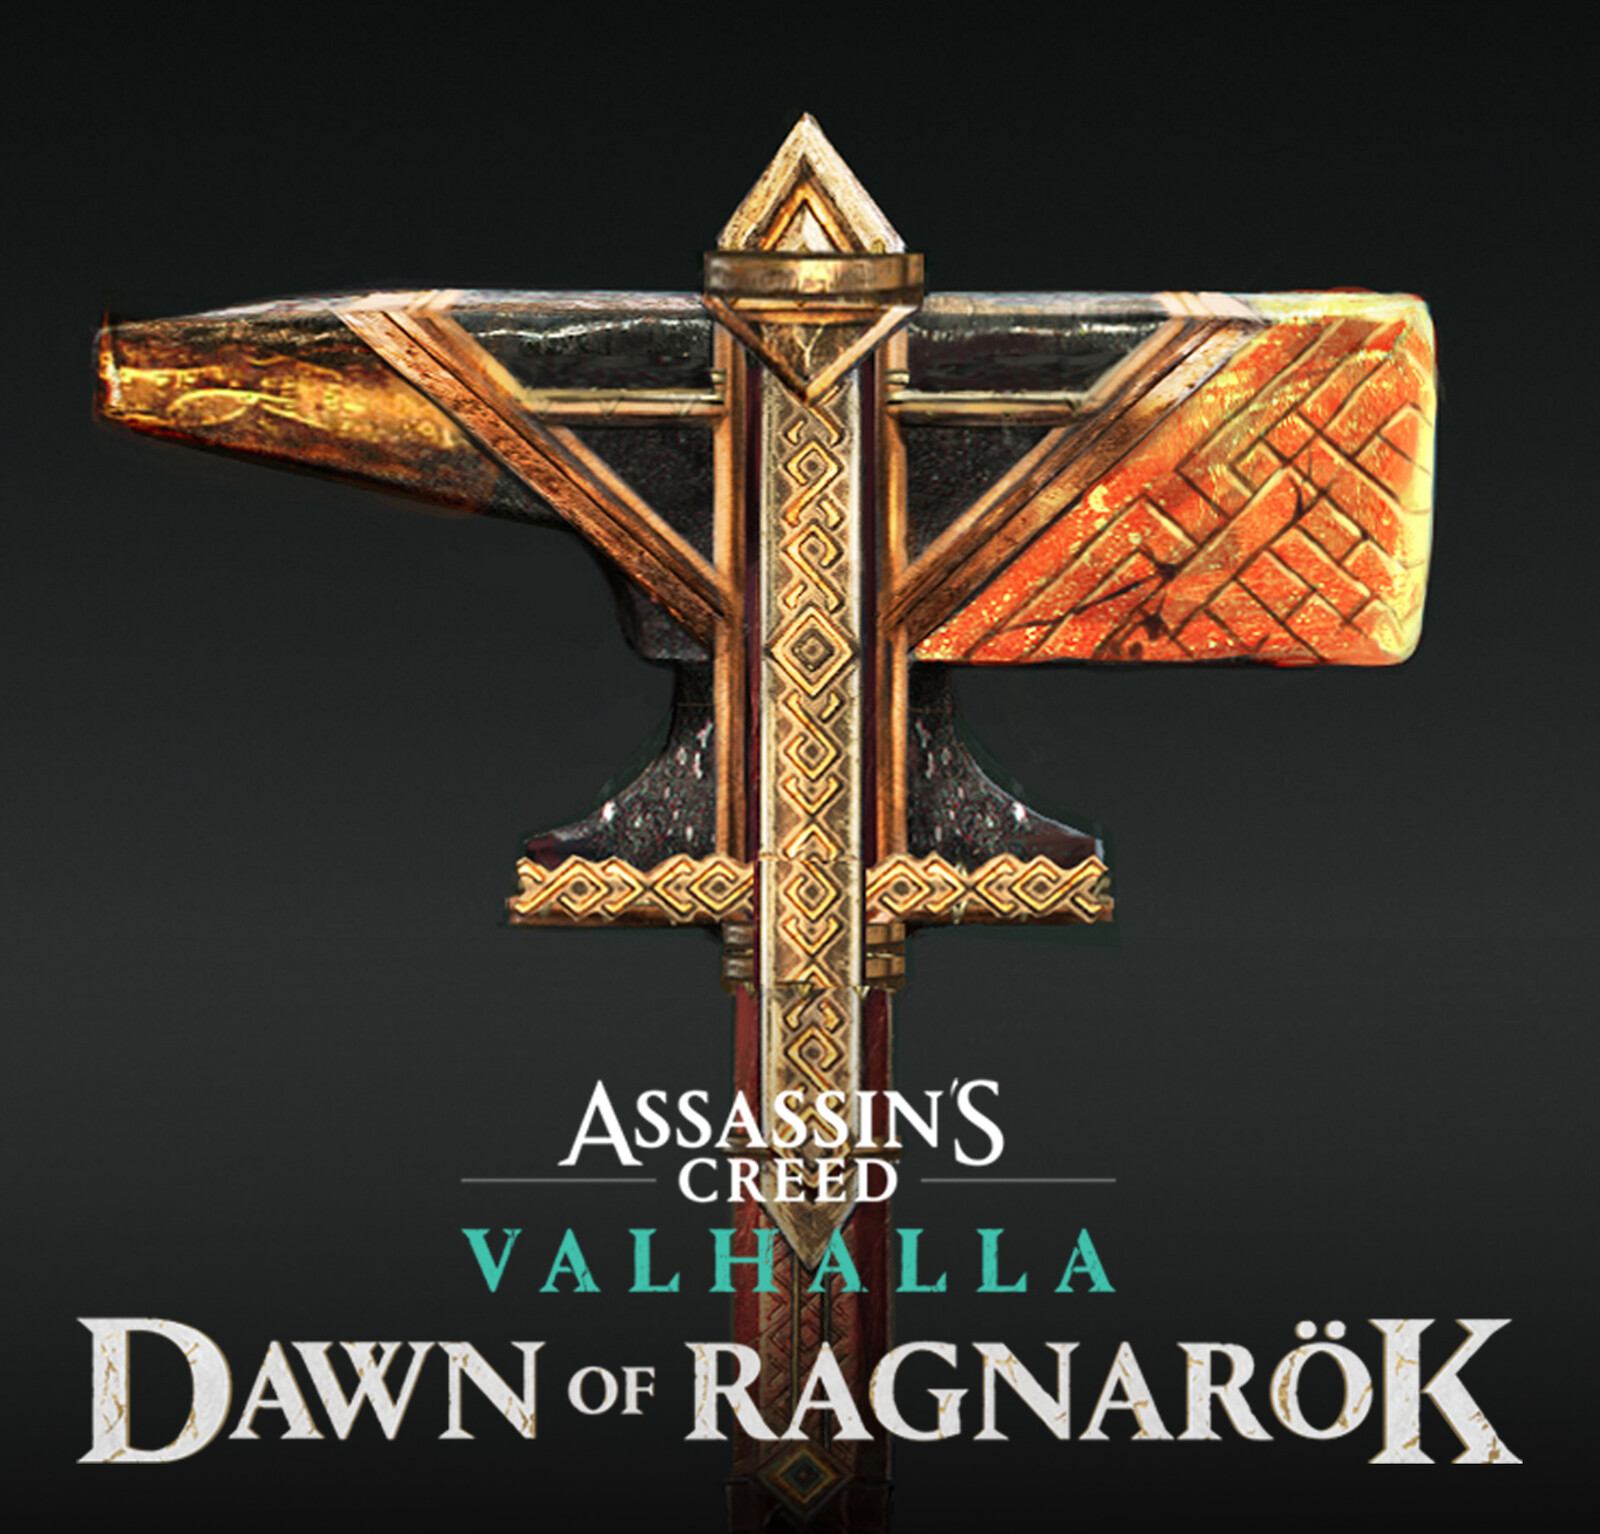 Assassins Creed Valhalla "Dawn Of Ragnarok" - Weapons